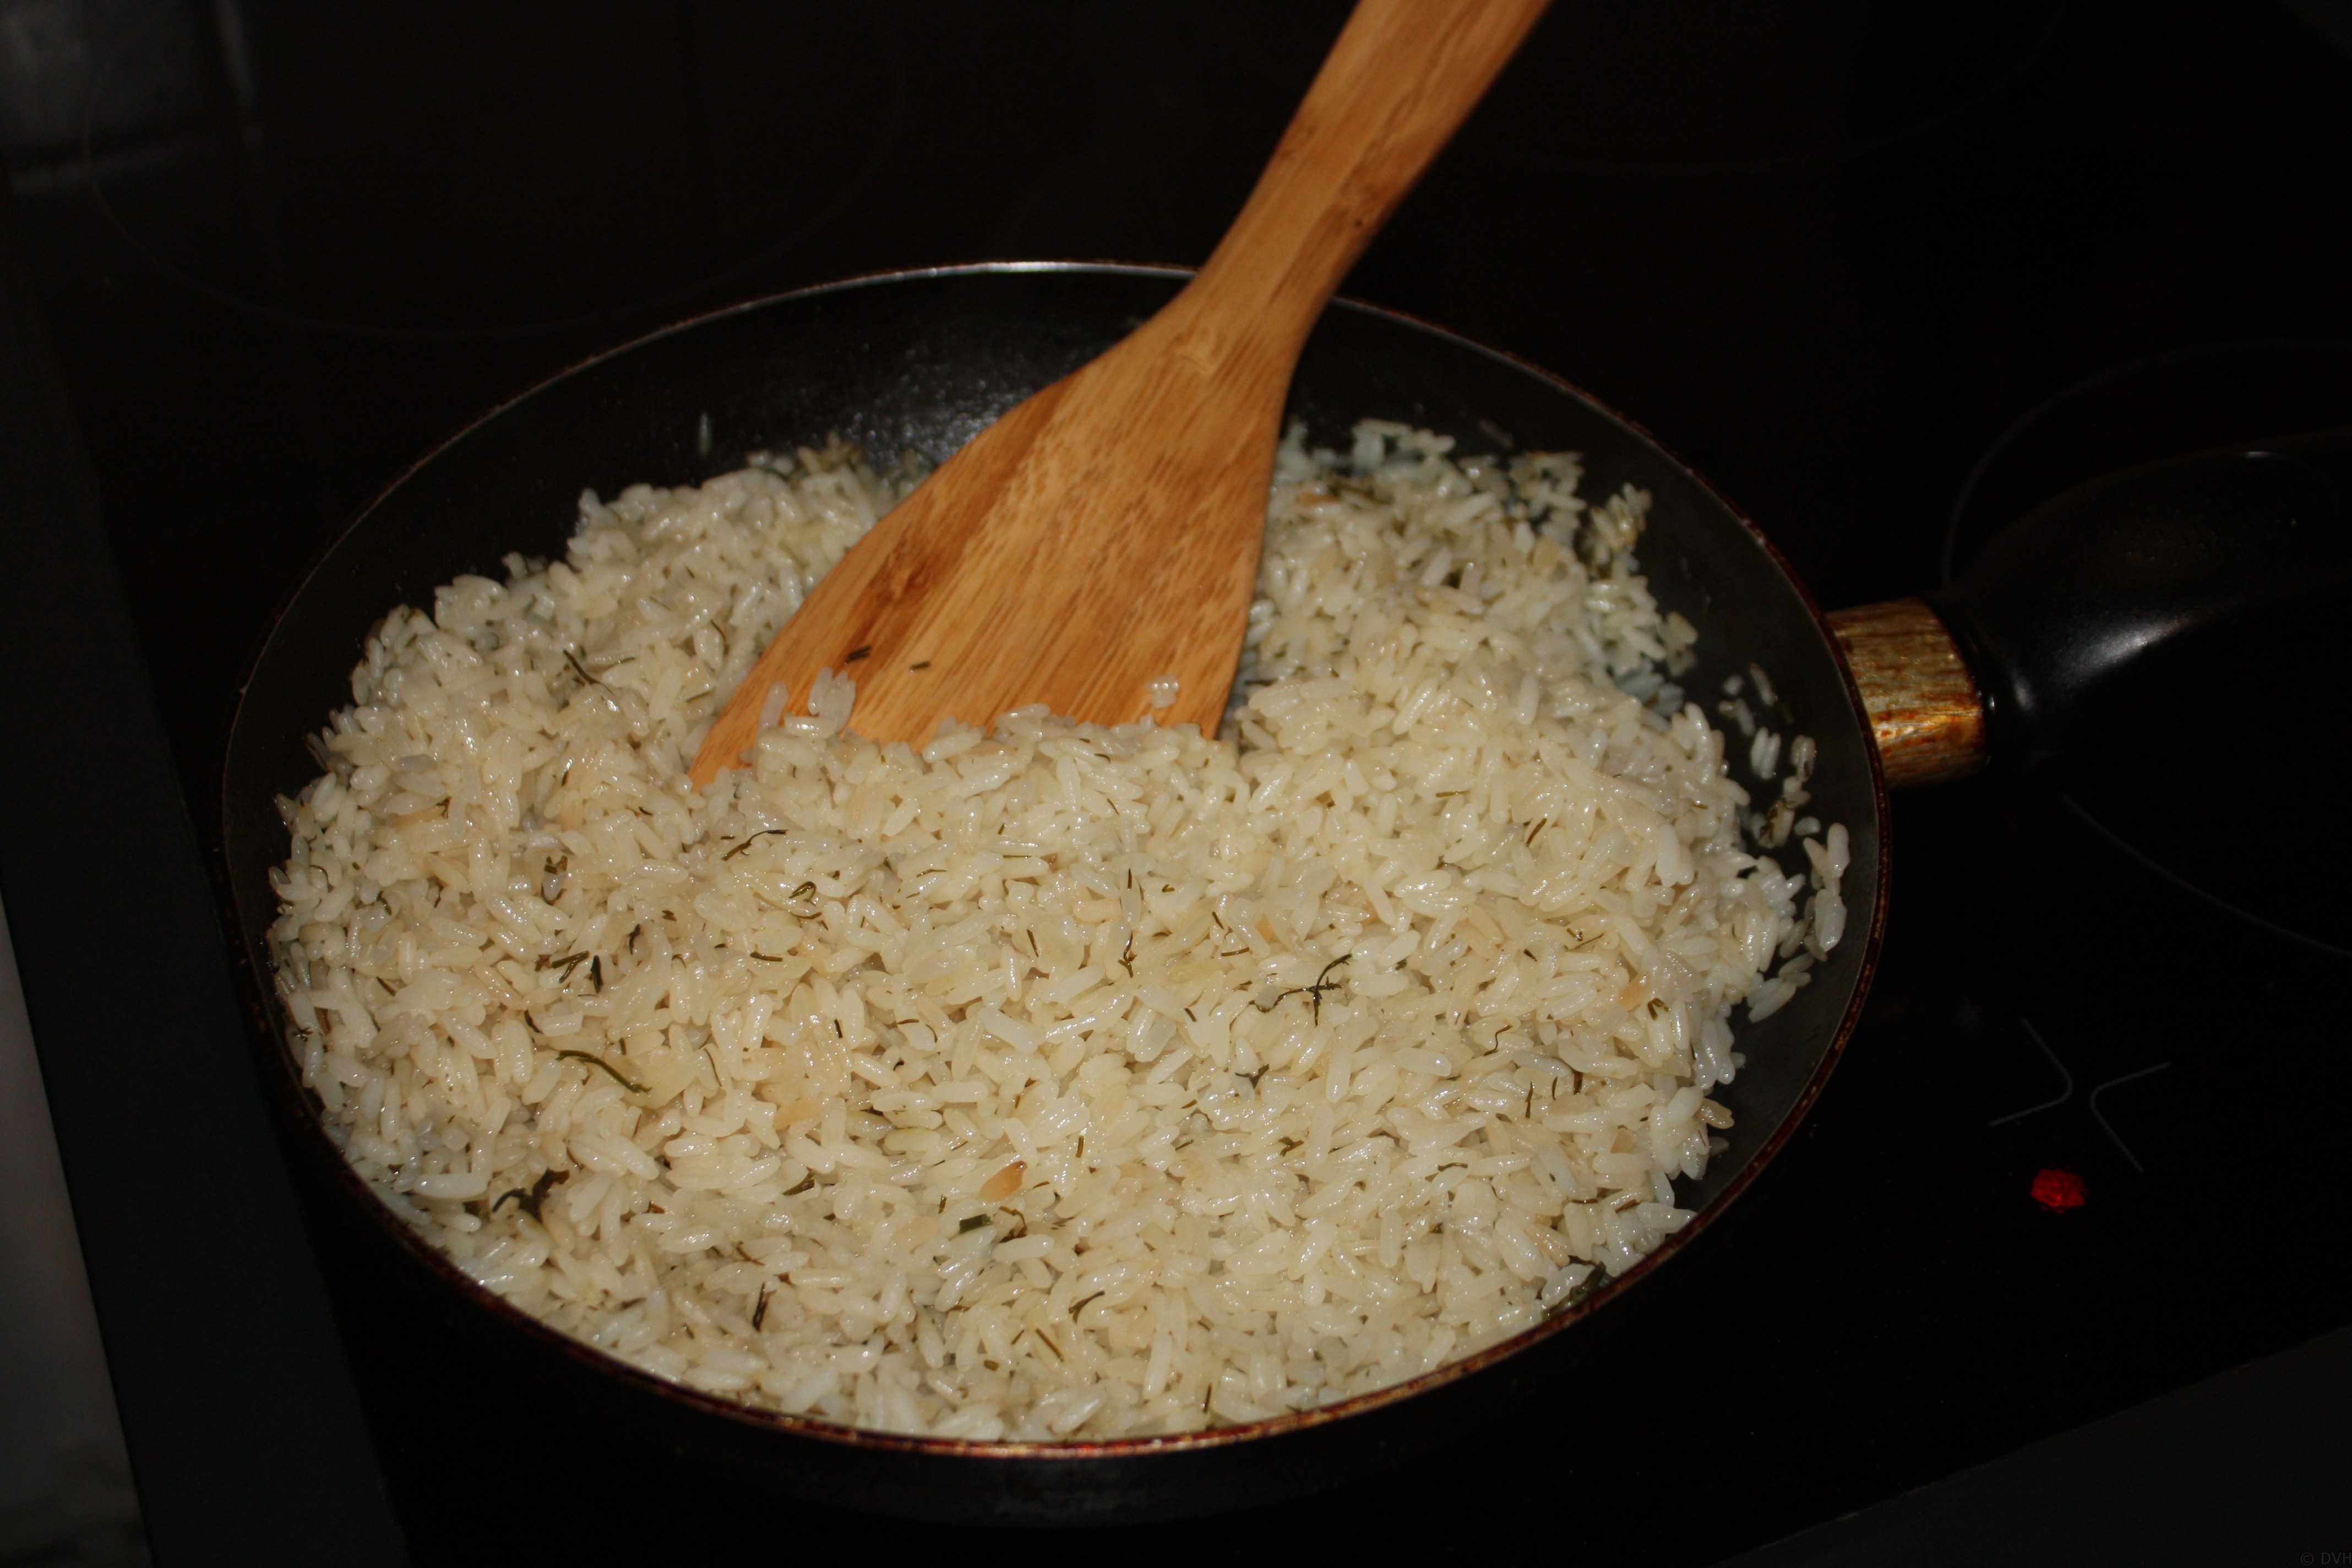 Сколько воды лить в плов. Рис басмати вареный. Рис басмати приготовленный. Пропорции риса басмати и воды. Рис басмати для плова.